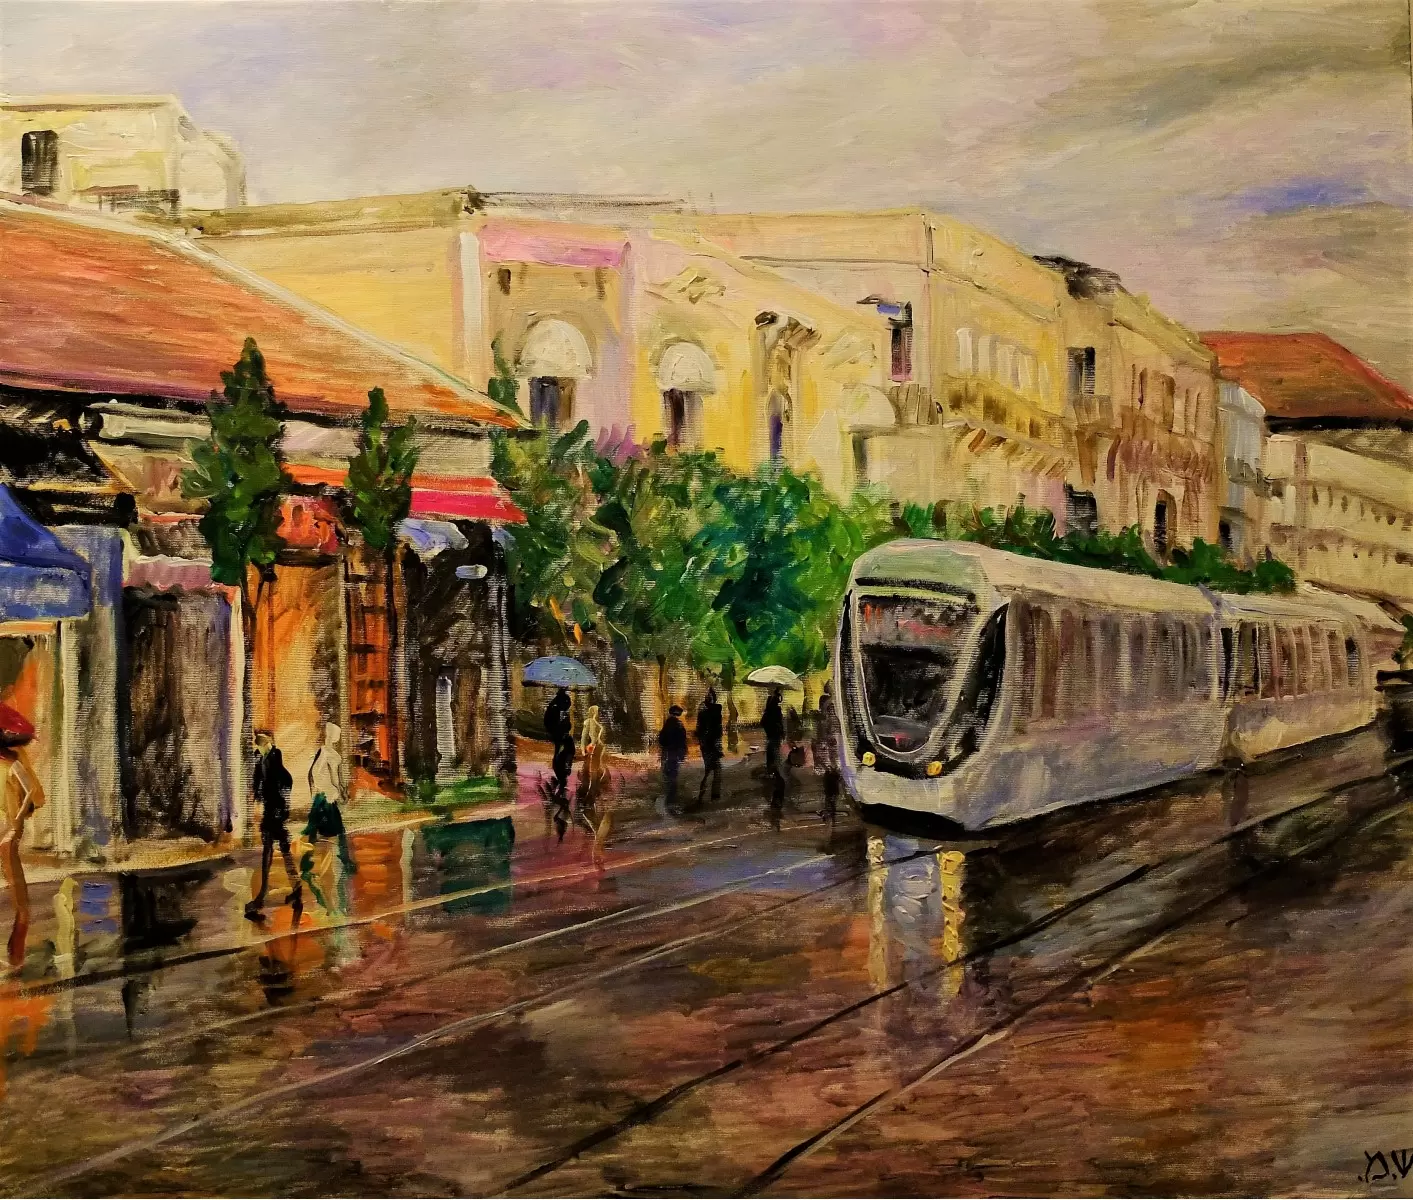 הרכבת הקלה בירושלים (3)  - שמואל מושניק - תמונות אורבניות לסלון  - מק''ט: 330970